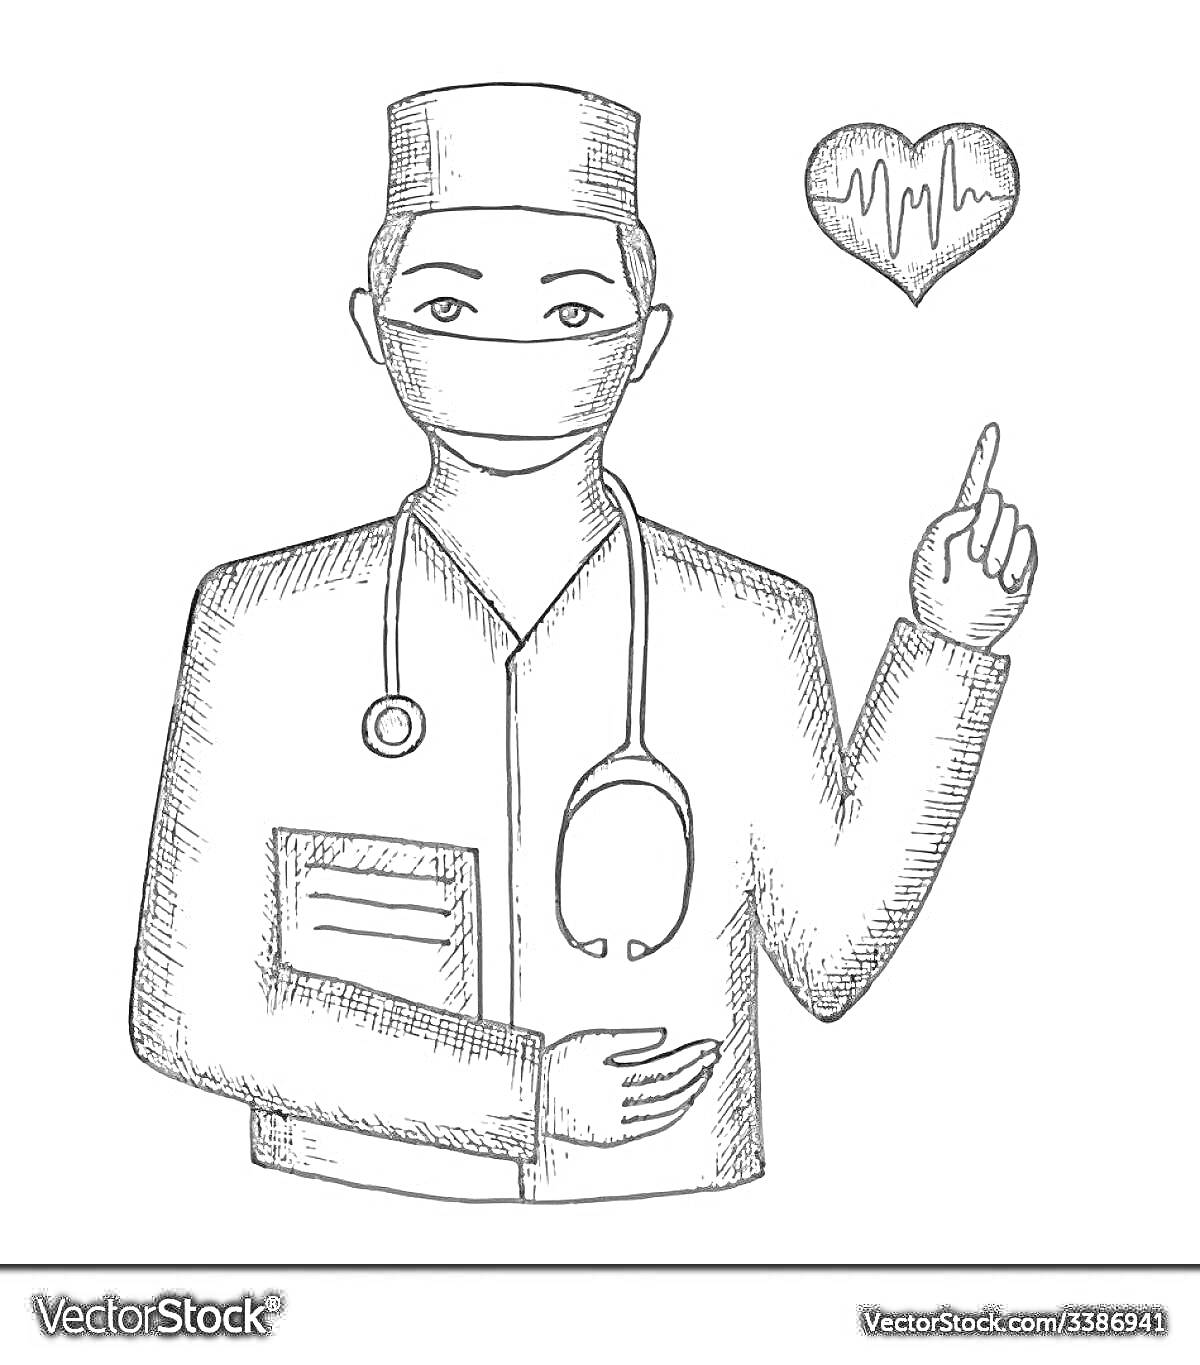 Врач в медицинской форме с книгой и стетоскопом, показывающий на сердце с кардиограммой